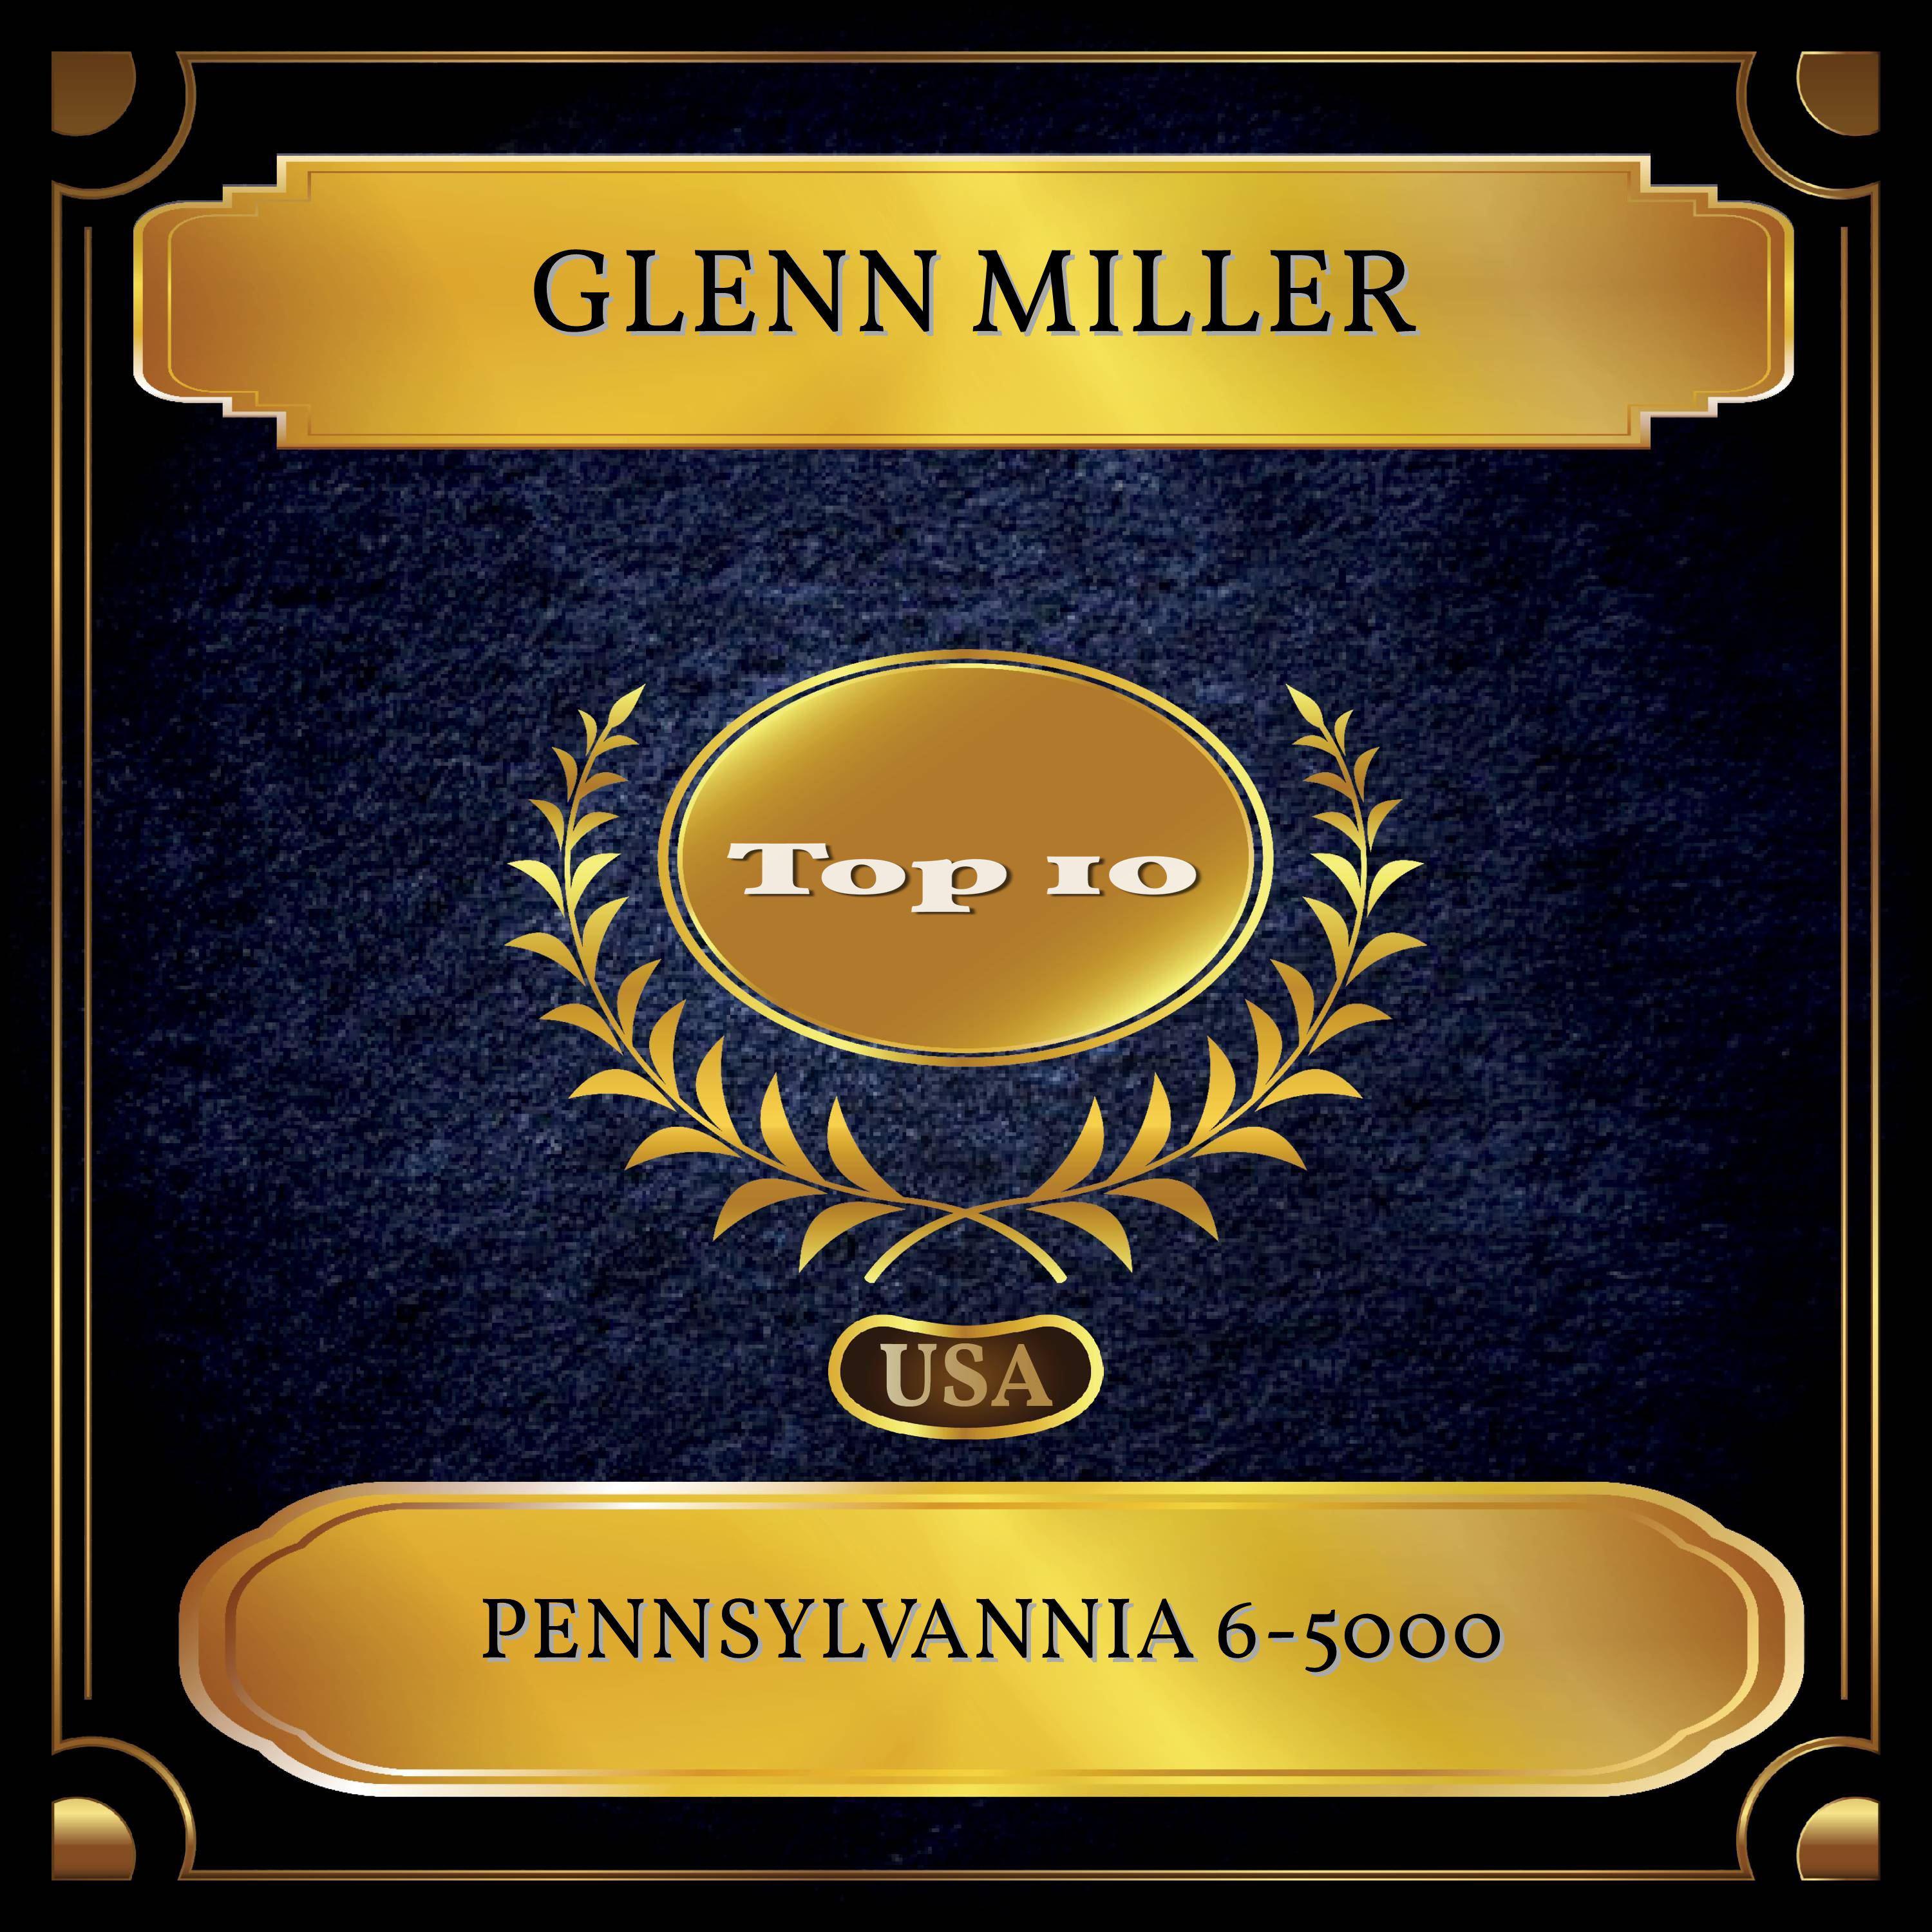 Pennsylvannia 6-5000 (Billboard Hot 100 - No. 05)